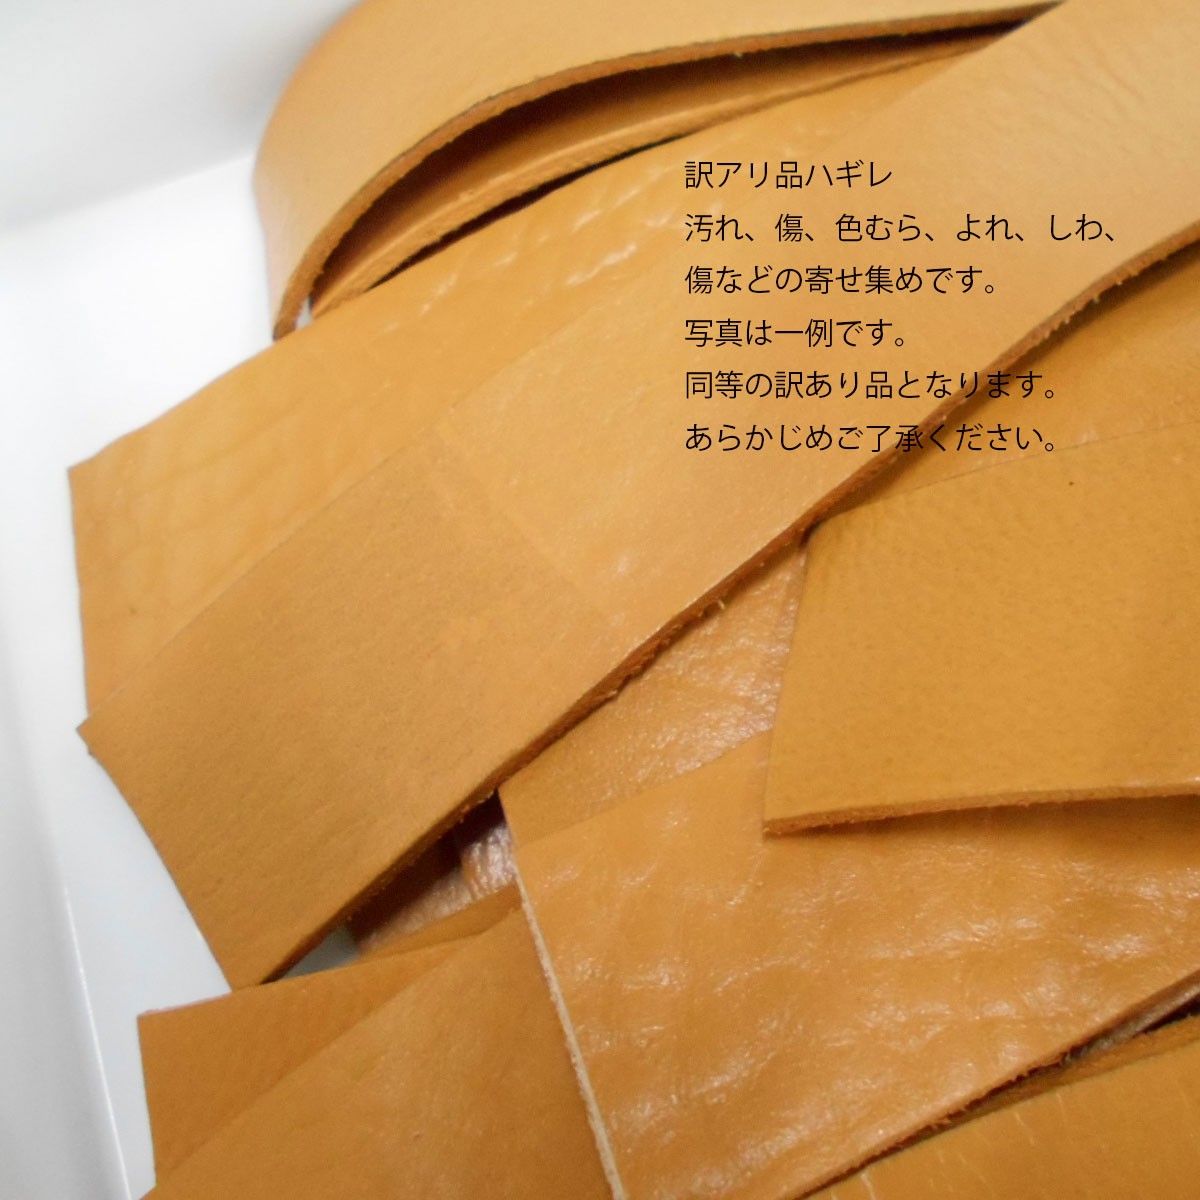 ワケアリ キズ ハギレ 150ｇ 詰め合わせ ブラウンベージュ系 30ｍｍ幅 レザー 牛革 タグ キーホルダー 材料 素材